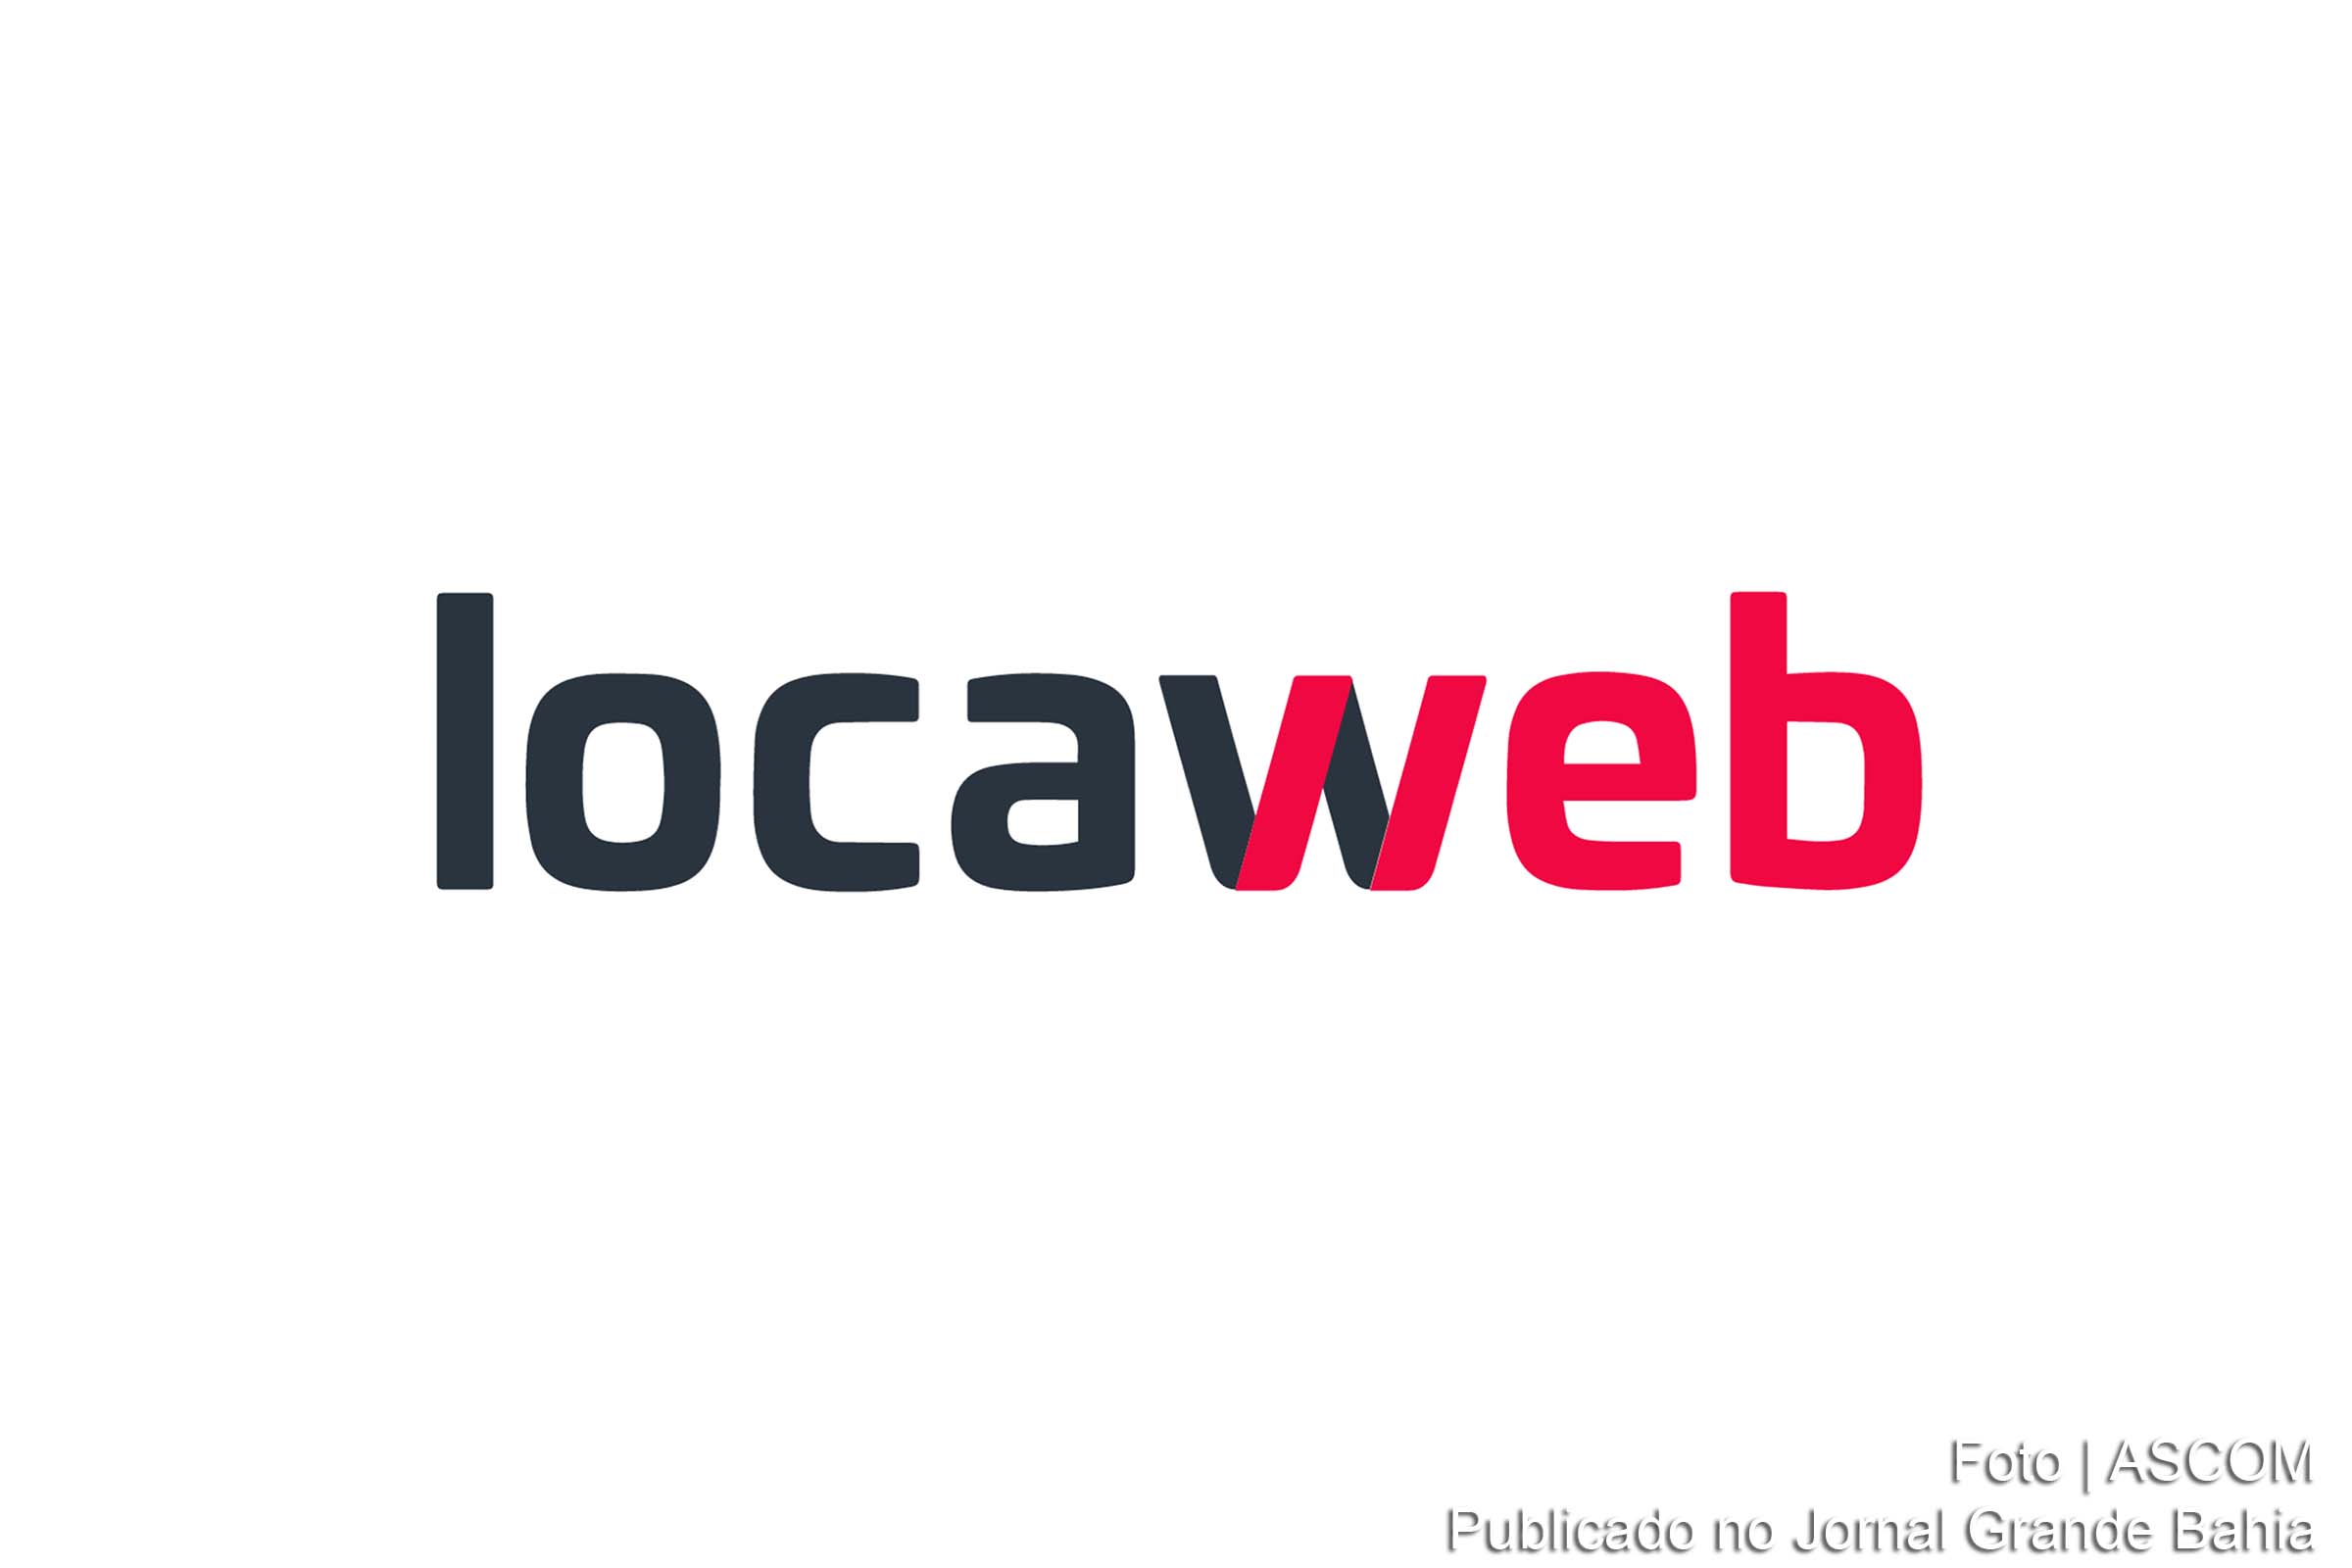 Locaweb é uma empresa brasileira de hospedagem de sites, serviços de internet e computação em nuvem, líder no Brasil e na América Latina.